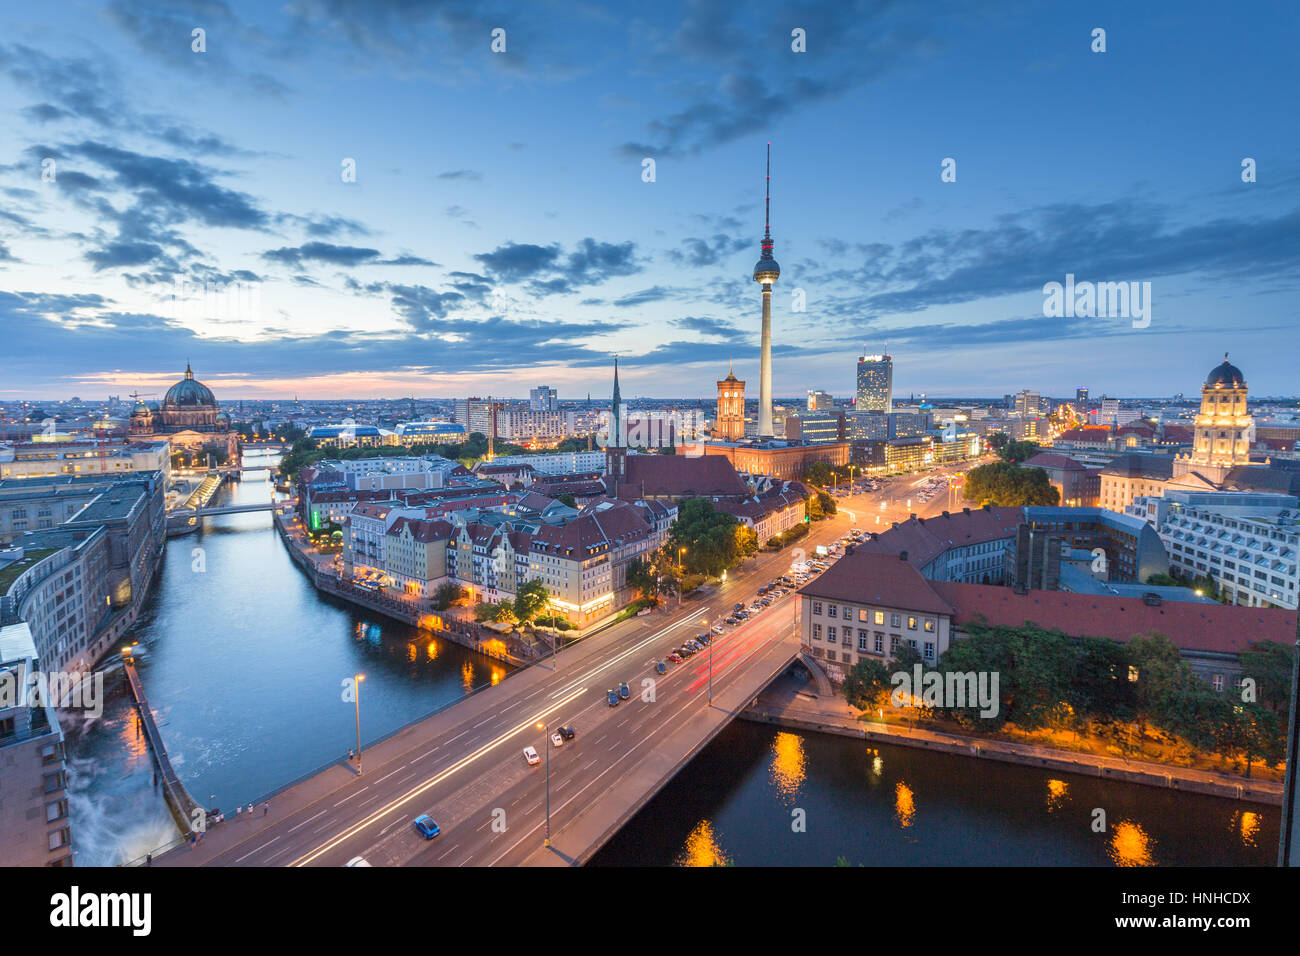 Klassische Luftaufnahme der Berliner Skyline mit berühmten Fernsehturm und Spree entlang in schönen Beitrag Sonnenuntergang Dämmerung während der blauen Stunde in der Abenddämmerung, Deutschland Stockfoto